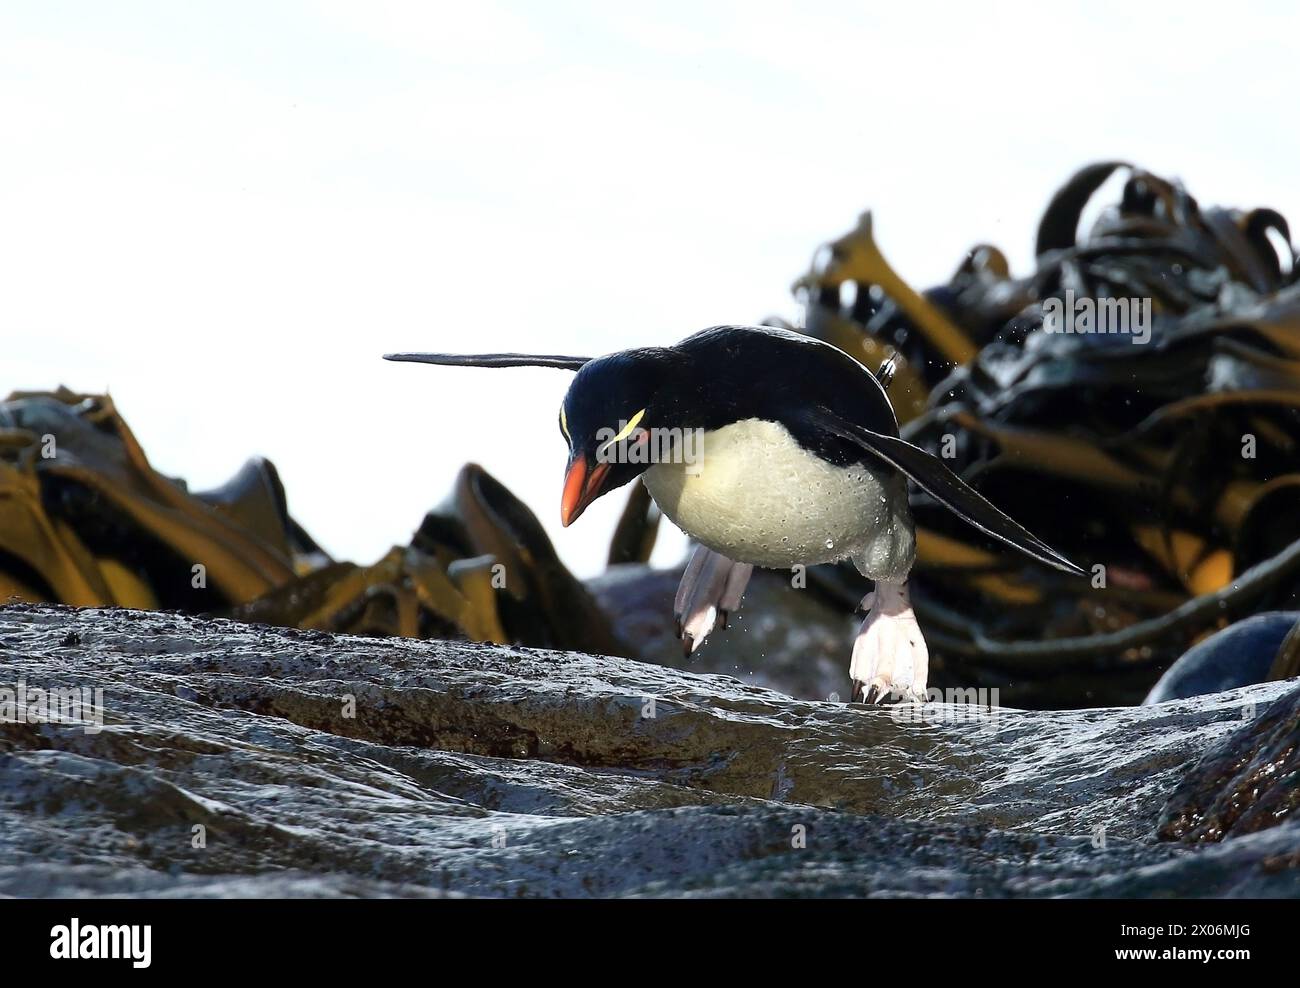 Pingouin Rockhopper, manchot rockhopper du Sud (Eudyptes chrysocome), grimpe sur une pente très glissante, Argentine, îles Falkland, Sea Lion Island Banque D'Images